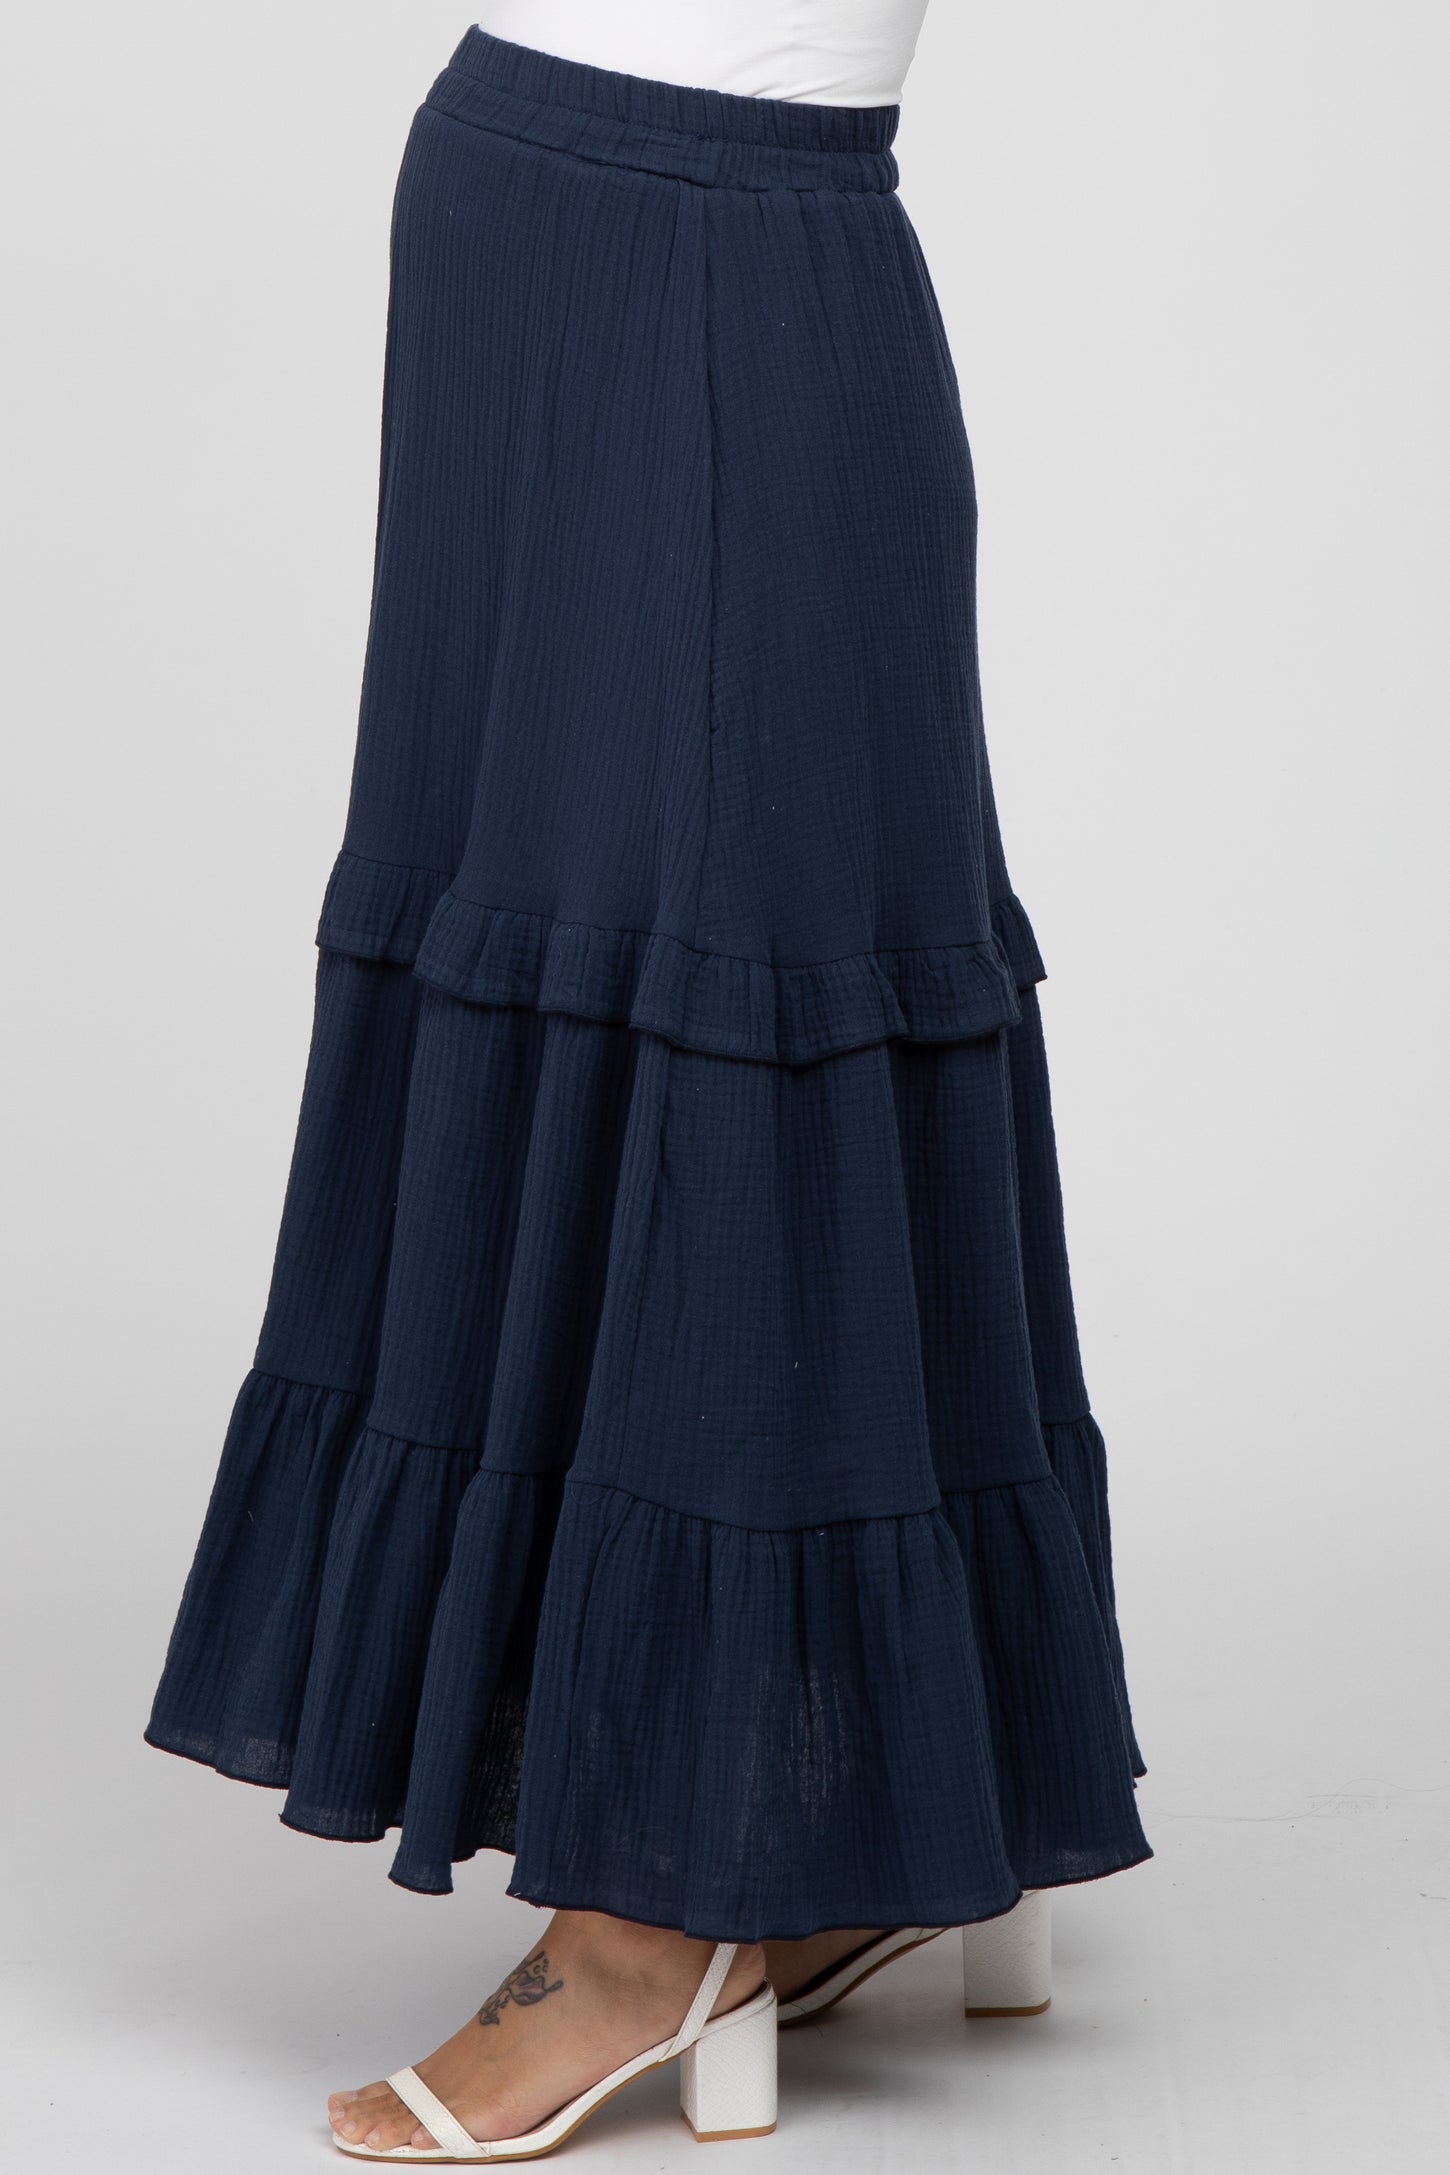 Navy Blue Cotton Gauze Ruffle Tiered Maternity Maxi Skirt– PinkBlush